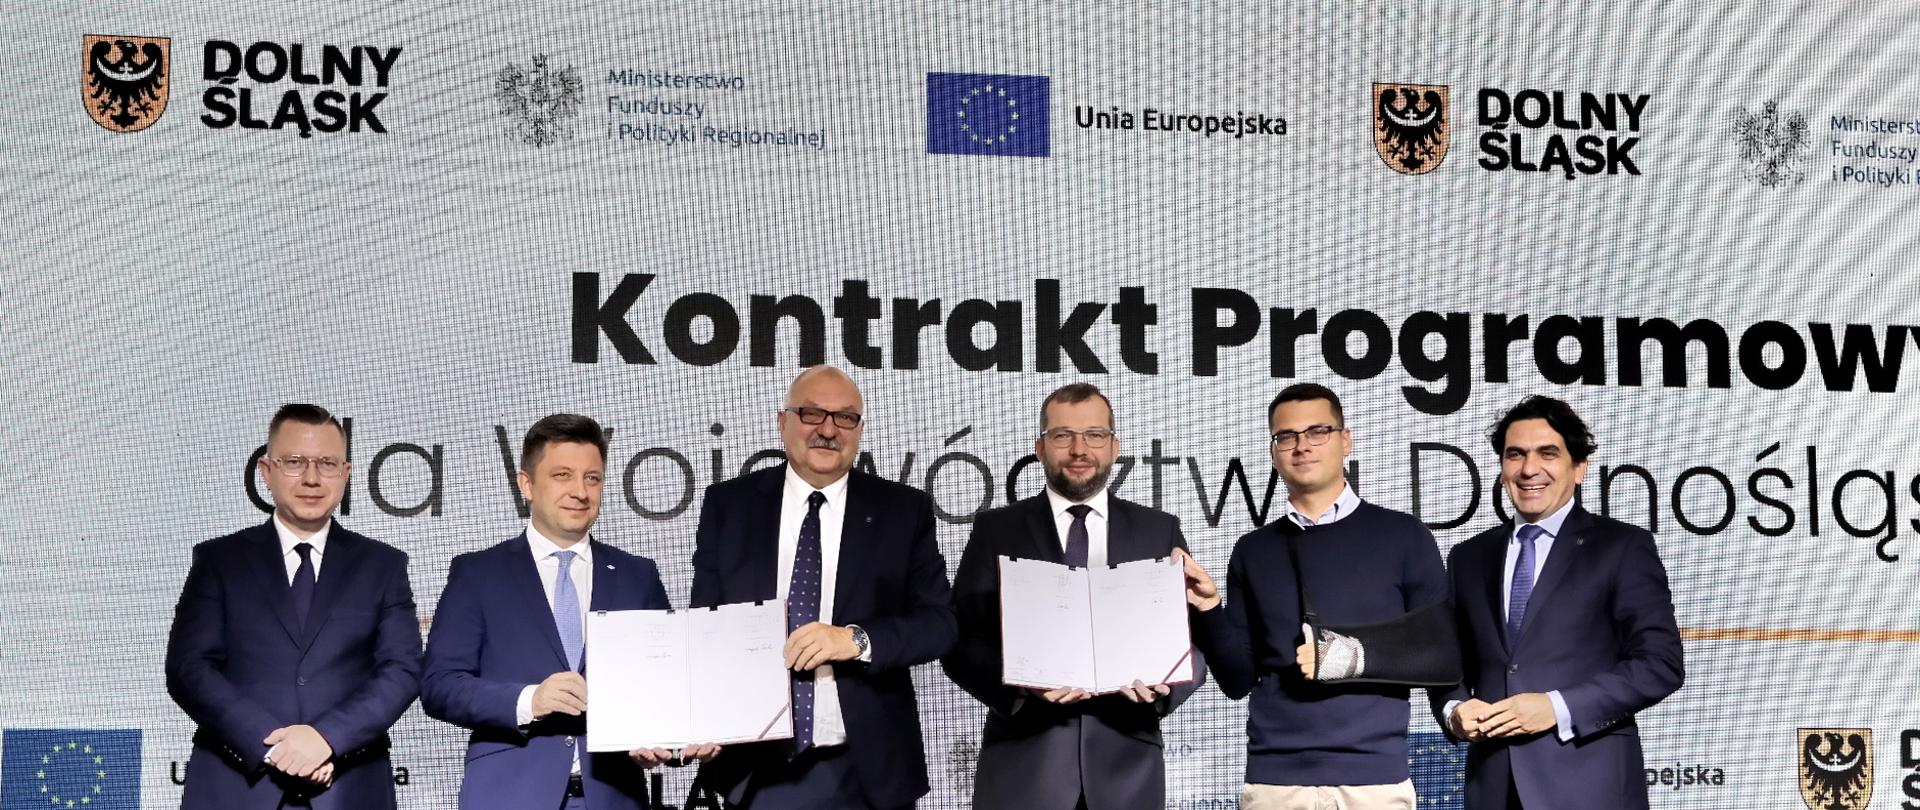  Zdjęcie przedstawia sześciu mężczyzn stojących obok siebie na scenie. Dwóch z nich trzyma w rękach podpisane dokumenty w twardej oprawie. Za ich plecami napis "Kontrakt Programowy". 